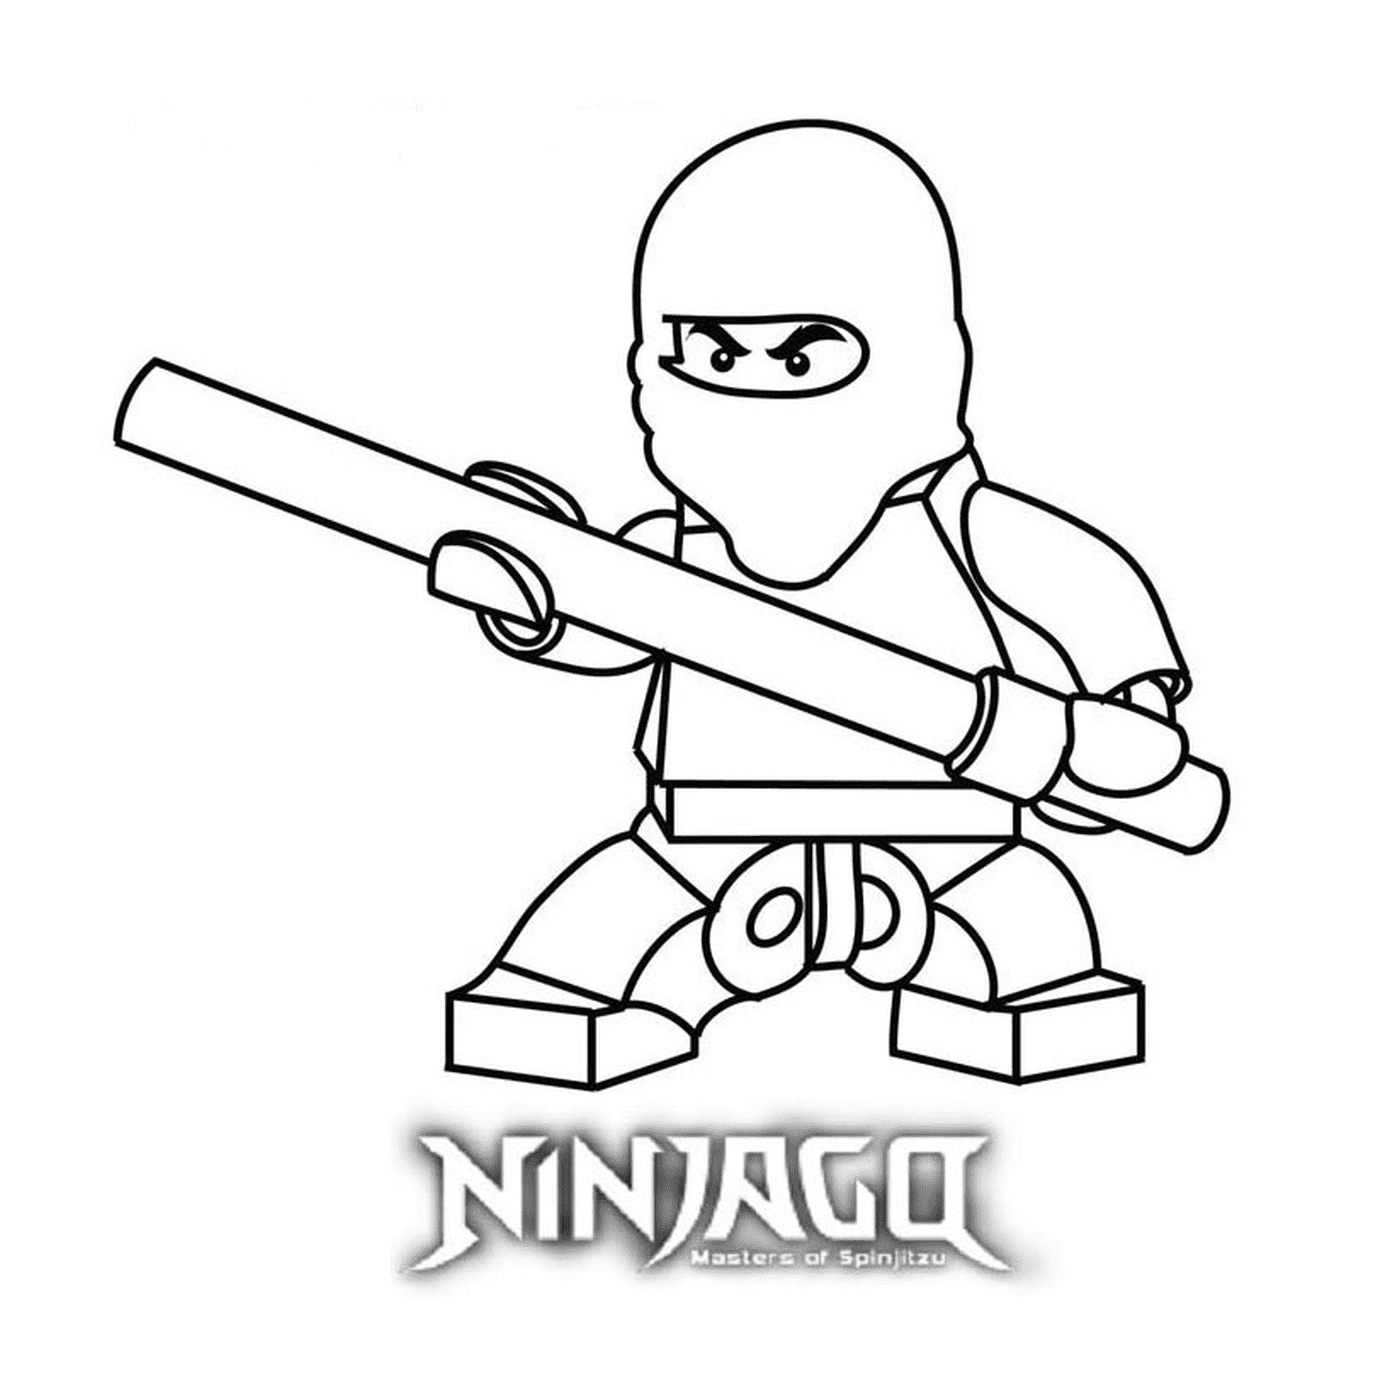  Download and print Lego Ninjago 